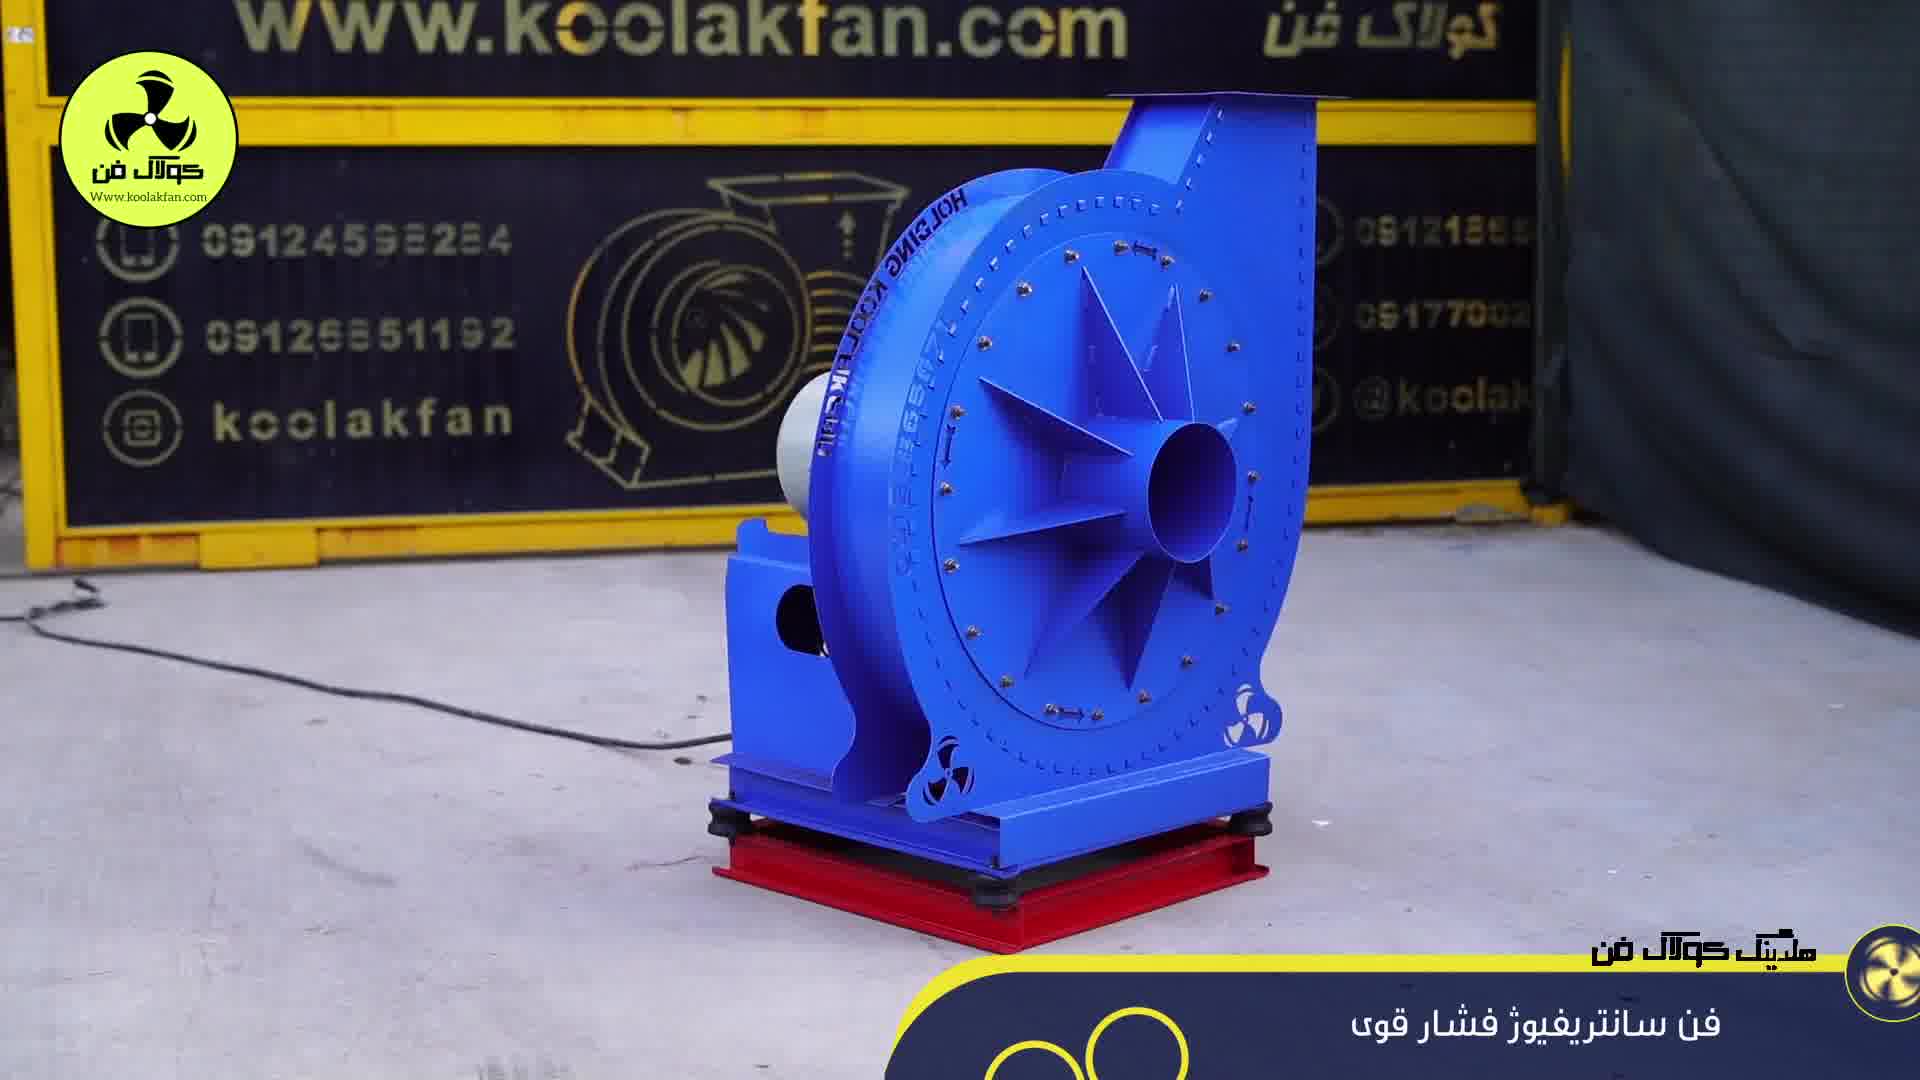 تولید فن سانتریفیوژ فشارقوی توسط شرکت کولاک فن در جنوب ایران